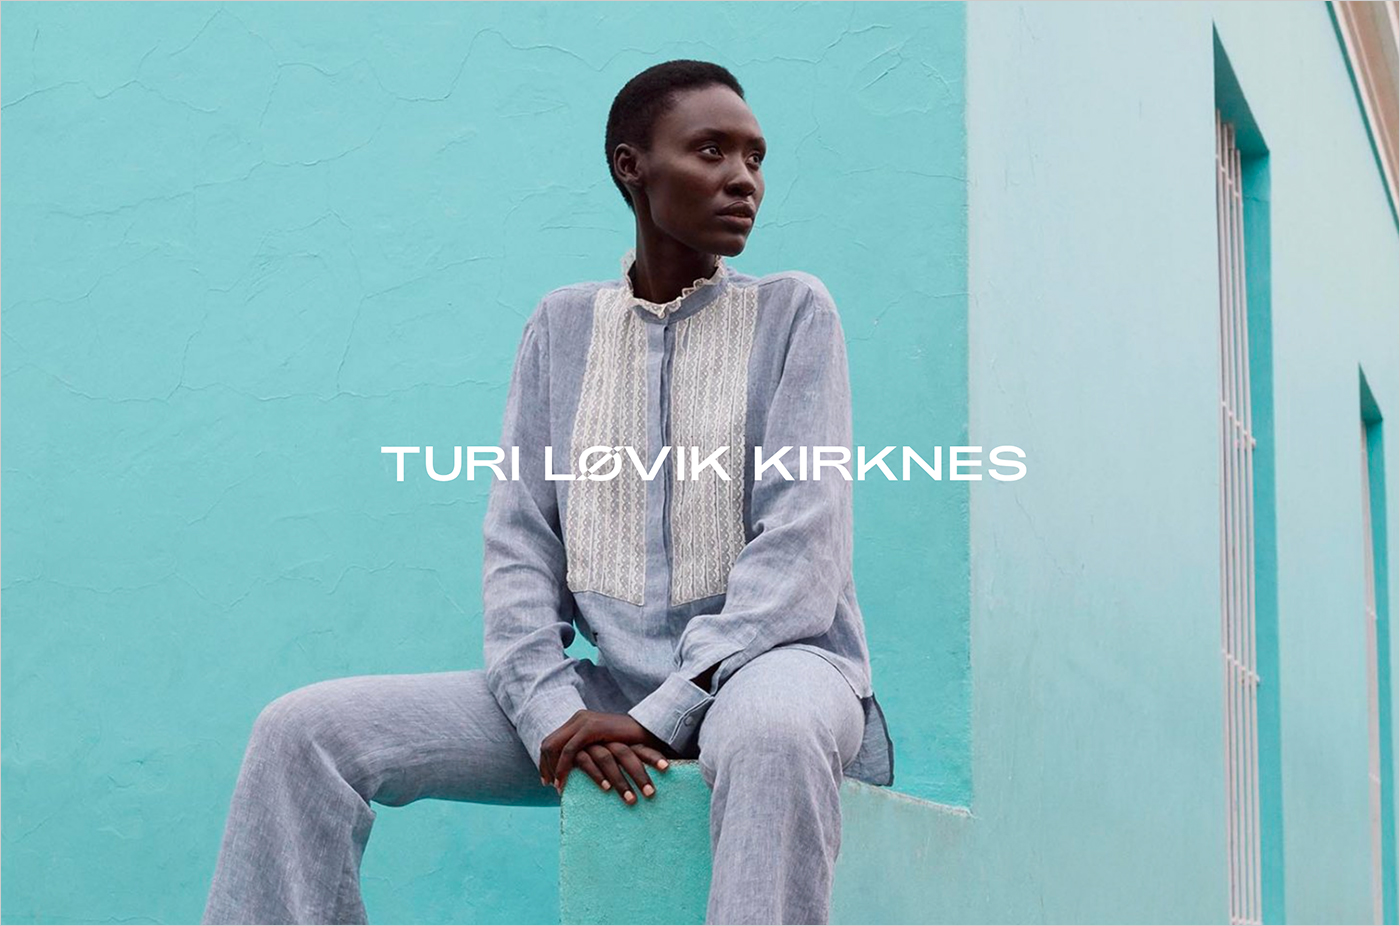 Turi-Løvik-Kirknesウェブサイトの画面キャプチャ画像